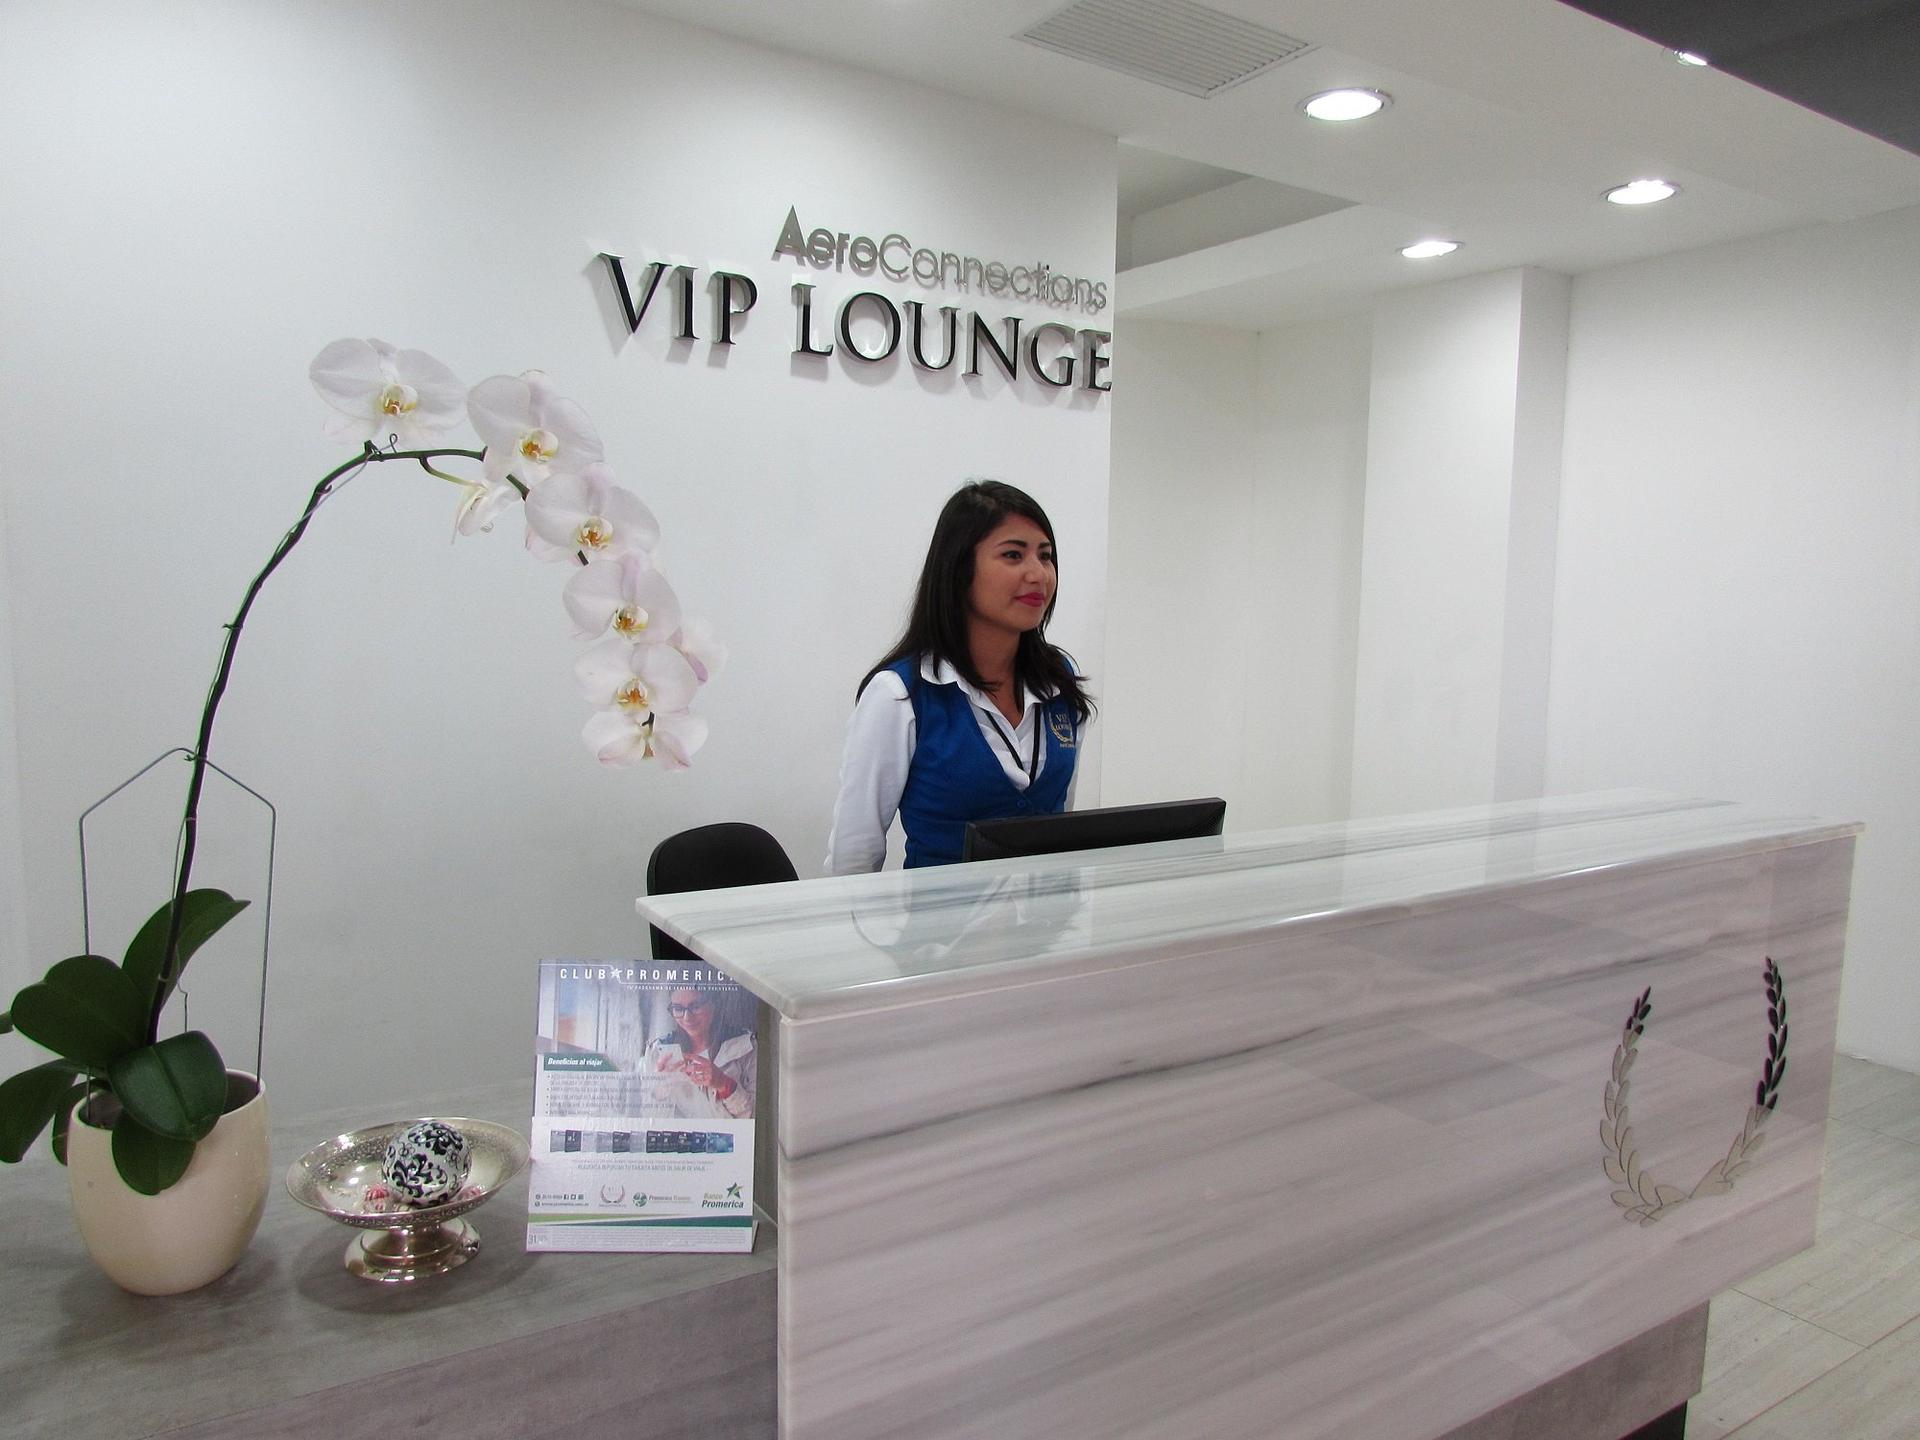 Aeroconnections VIP Lounge image 6 of 10